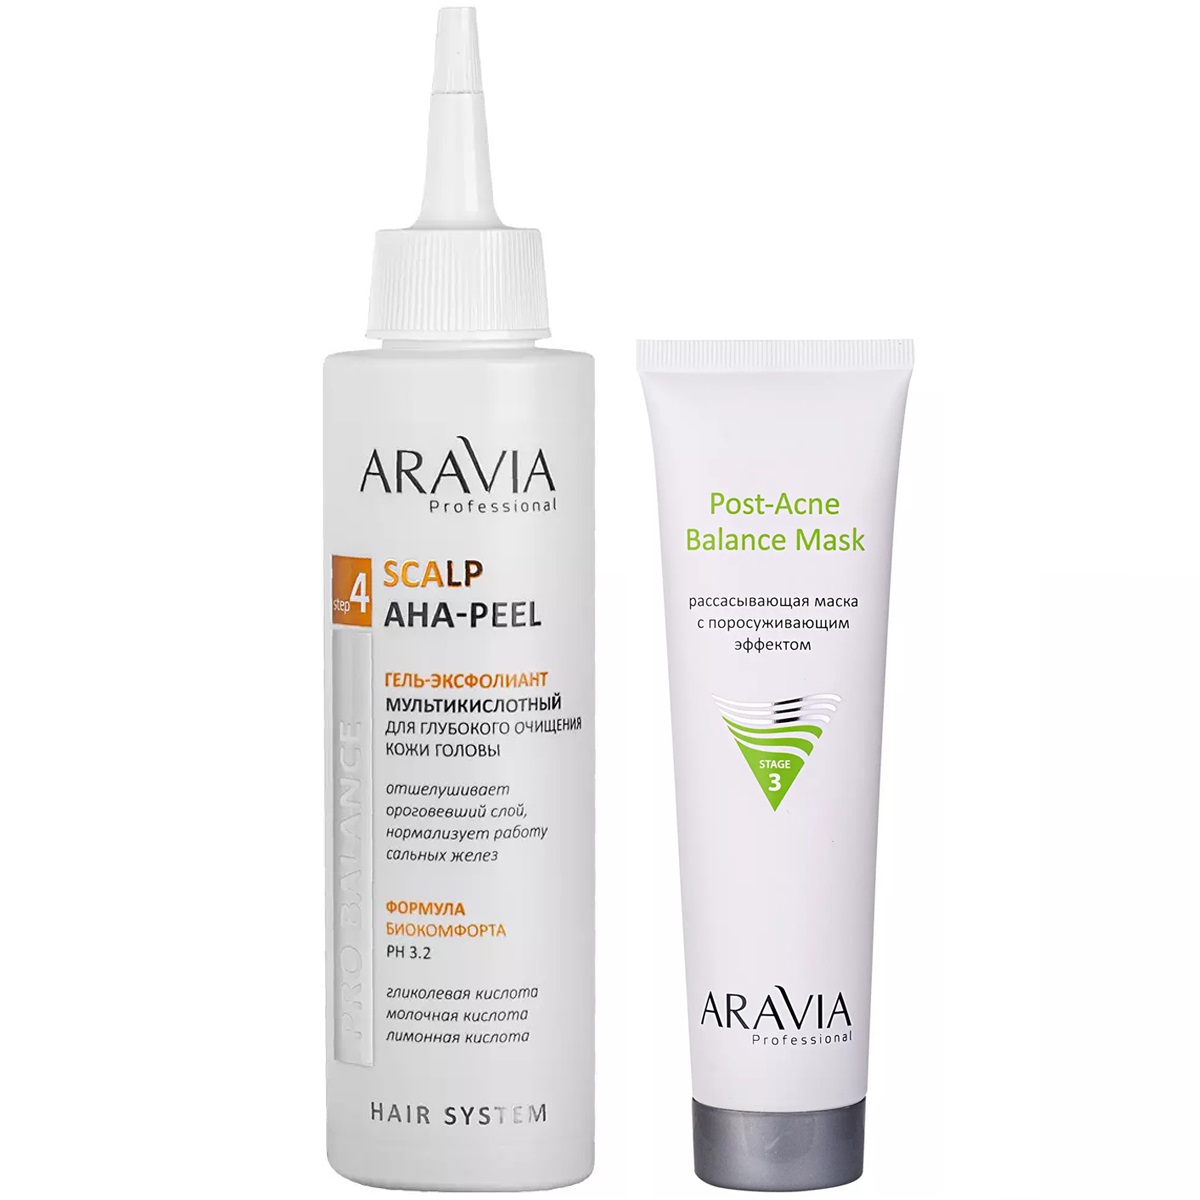 Aravia Professional Набор бестселлеров: маска, 100 мл + гель-эксфолиант, 150 мл (Aravia Professional, Уход за волосами)